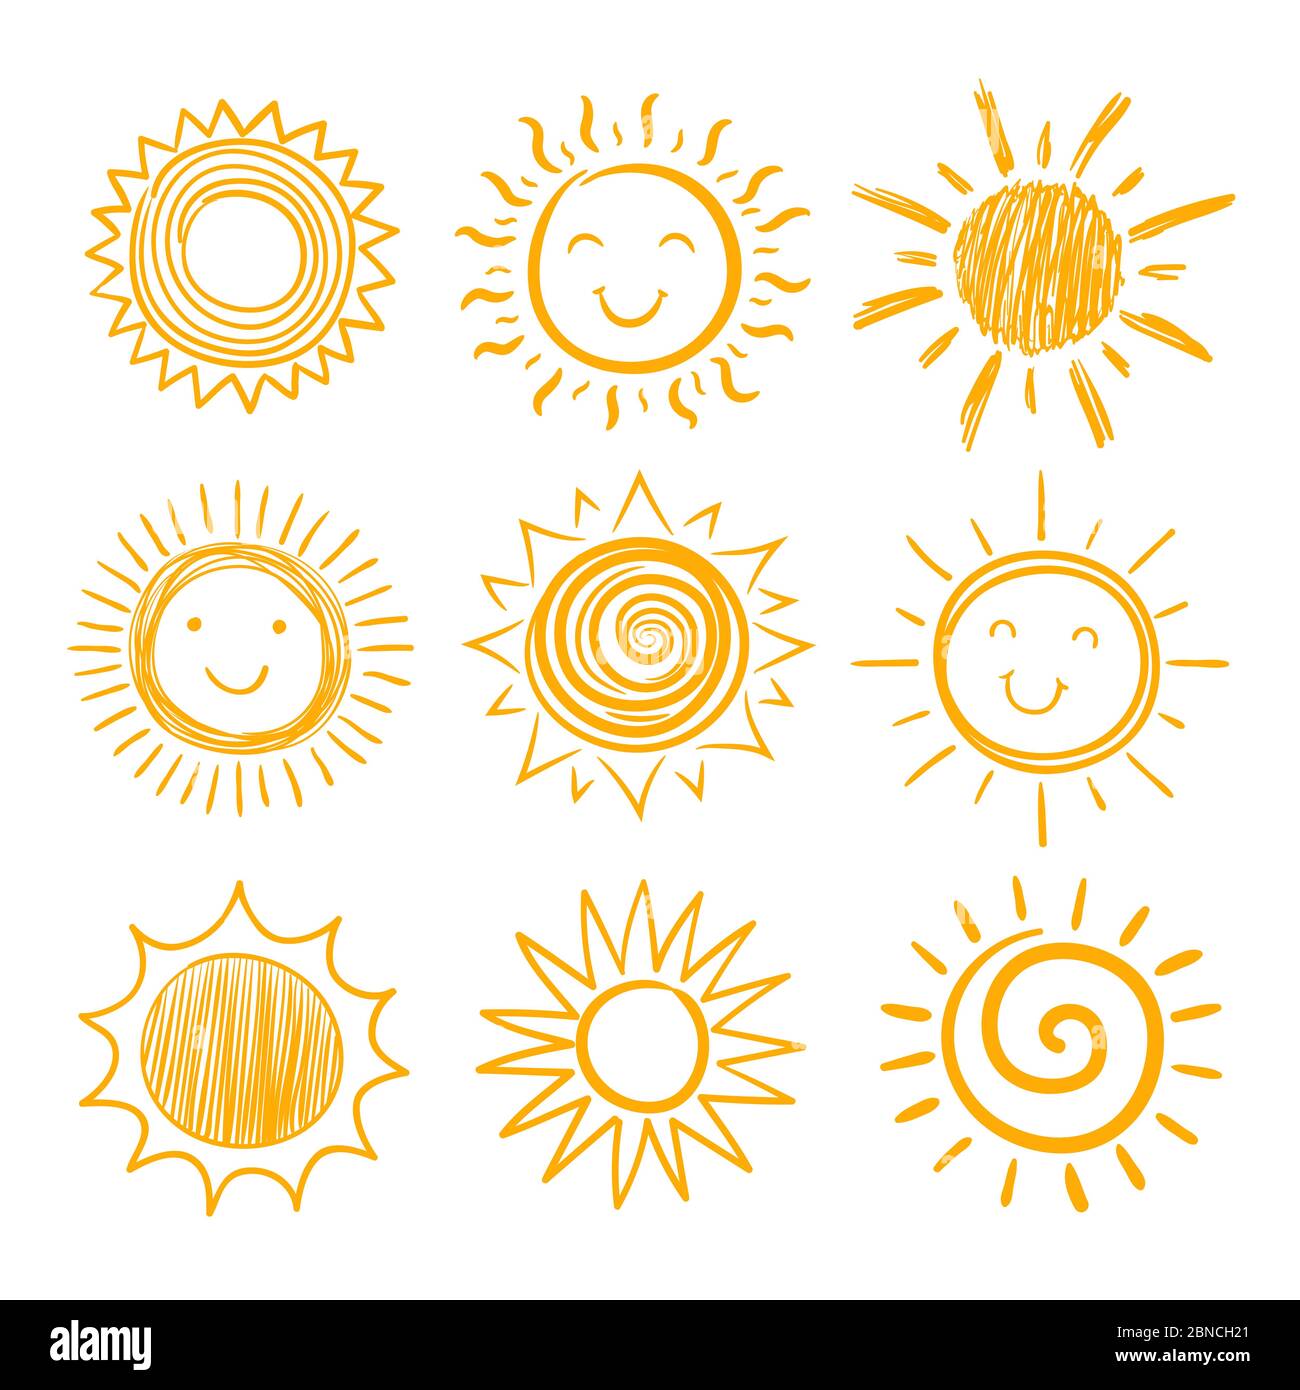 Skizze Sonnensymbole. Von Hand gezeichnete Sonne. Sonnenaufgang am Sommermorgen. Doodle Vektor Erwärmung Symbole isoliert. Illustration der sonnigen Sonnenschein Skizze Stock Vektor